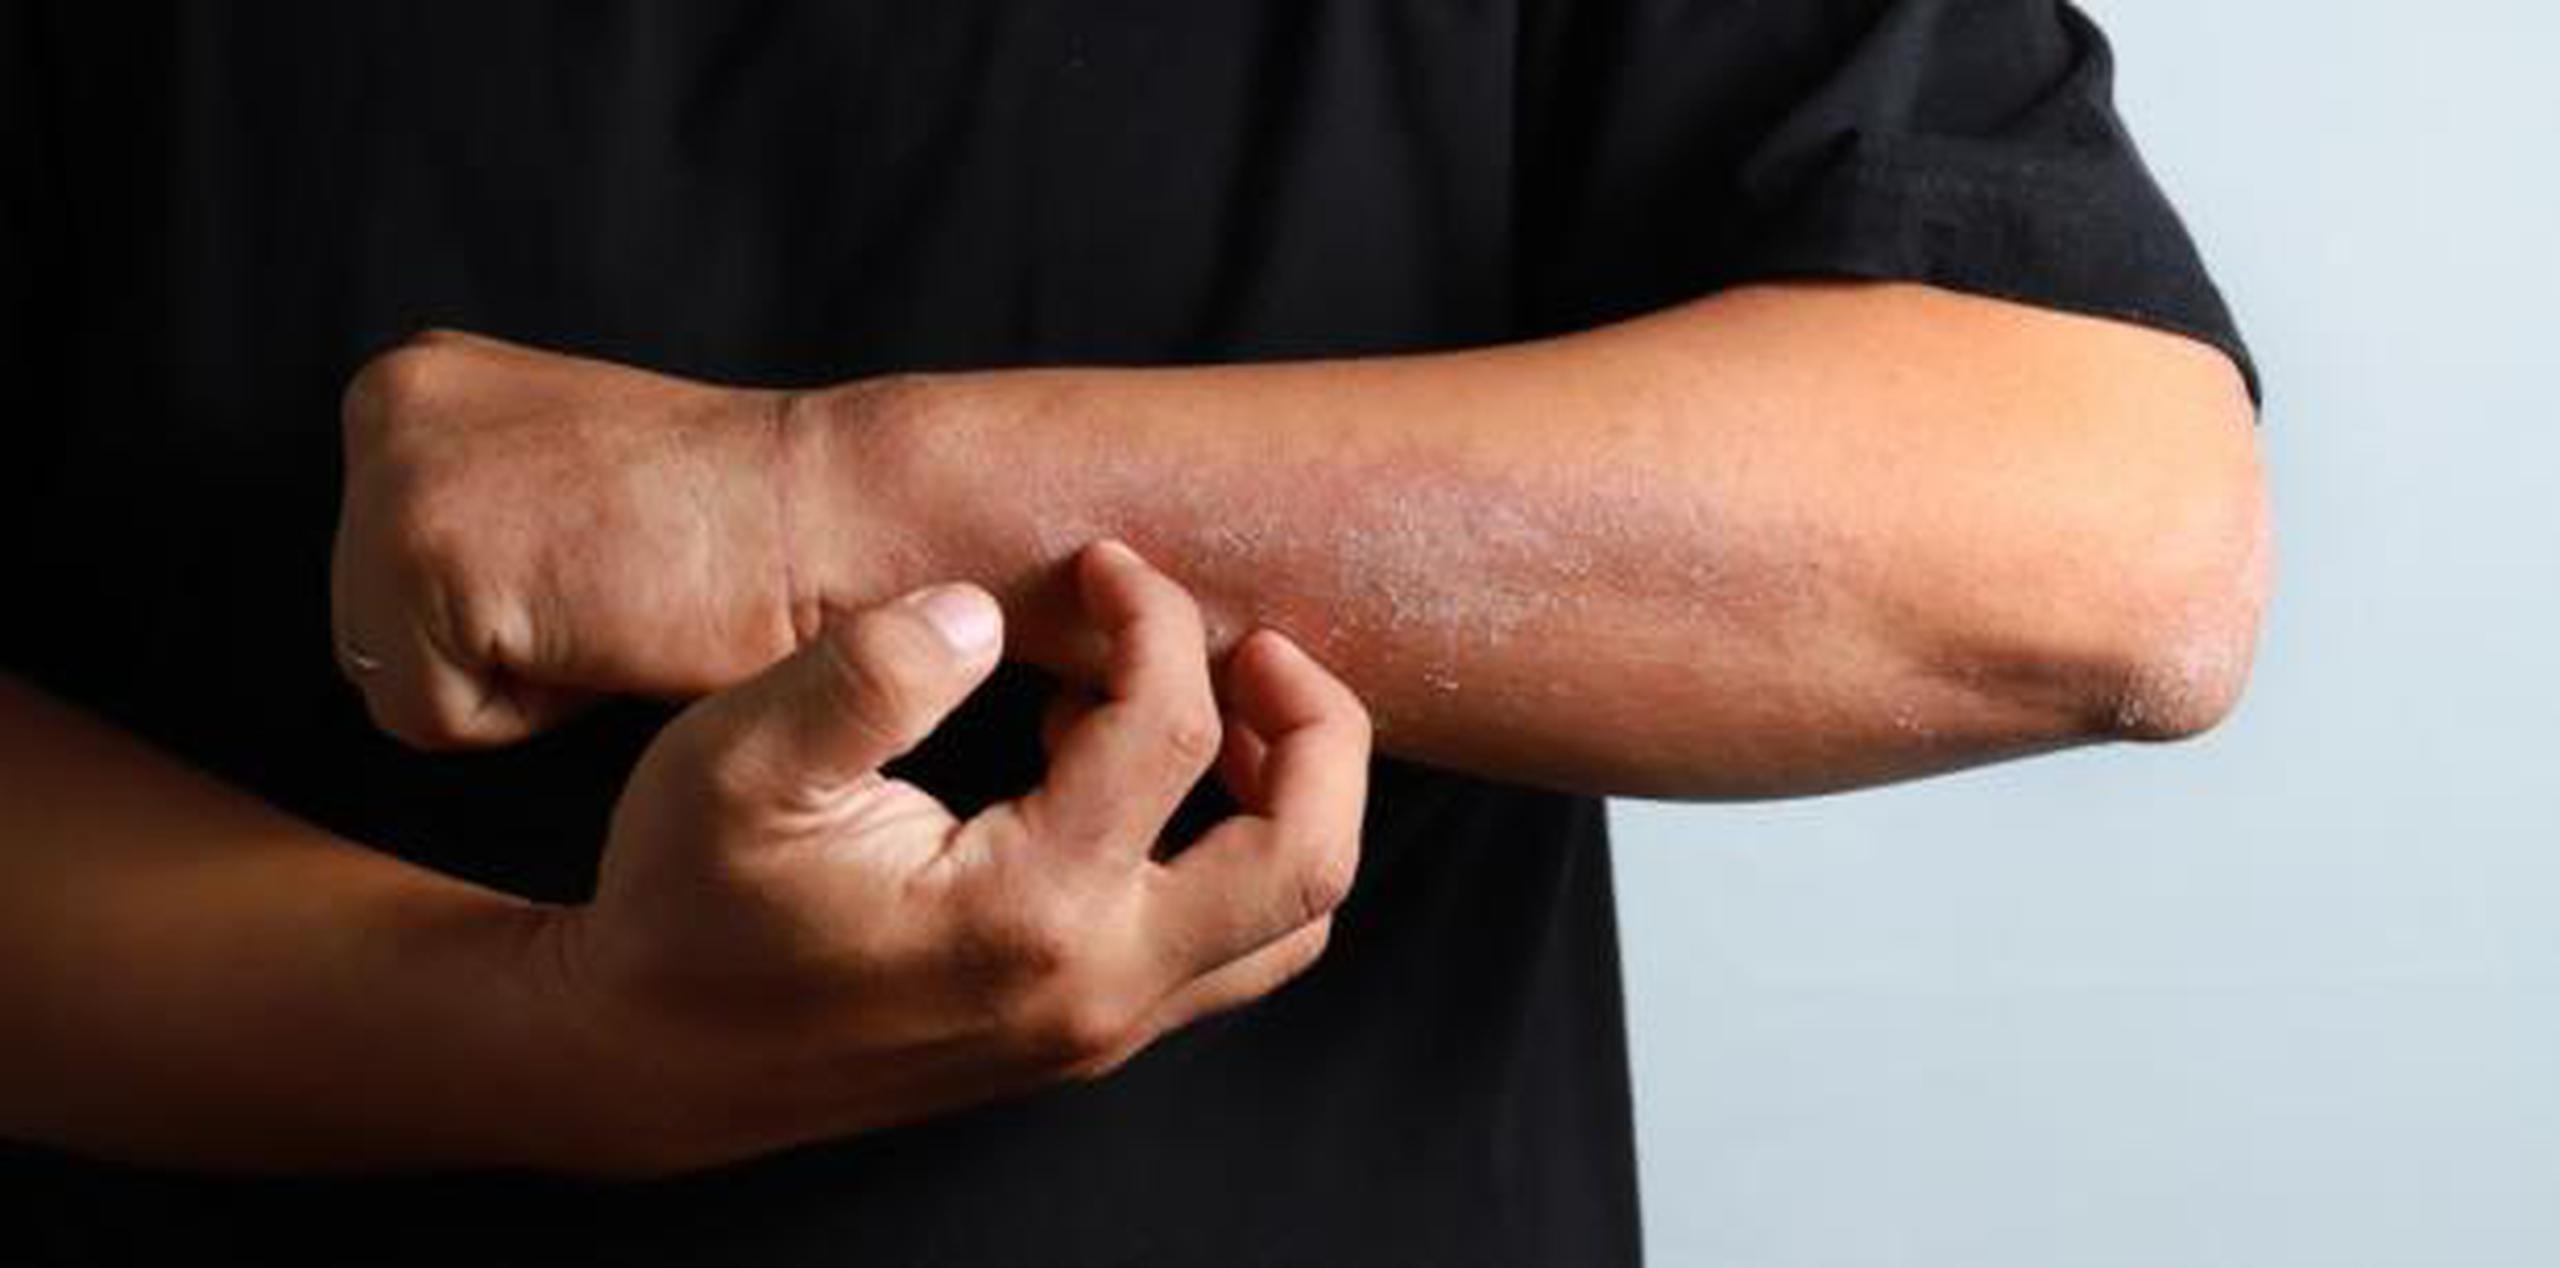 La dermatitis atópica es considerada una enfermedad rara o difícil de tratar que afecta a 3 % de los adultos. (Shutterstock)